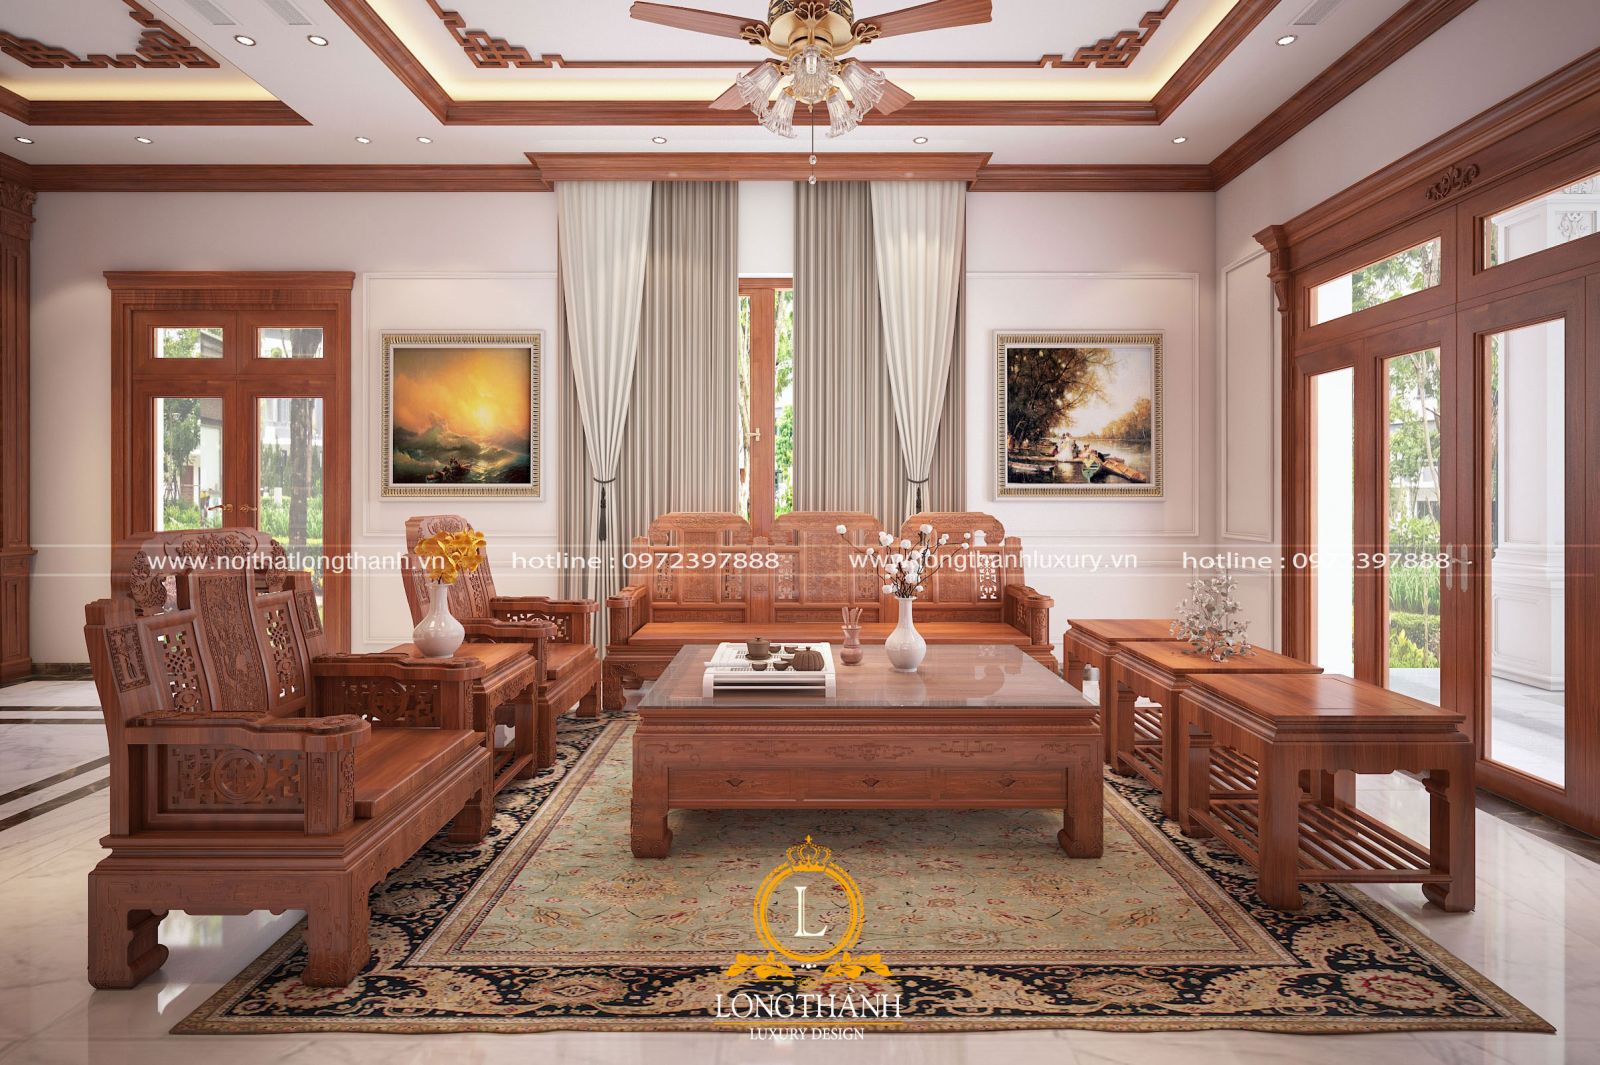 Mẫu sofa gỗ tân cổ điển hiện đại cho phòng khách biệt thự